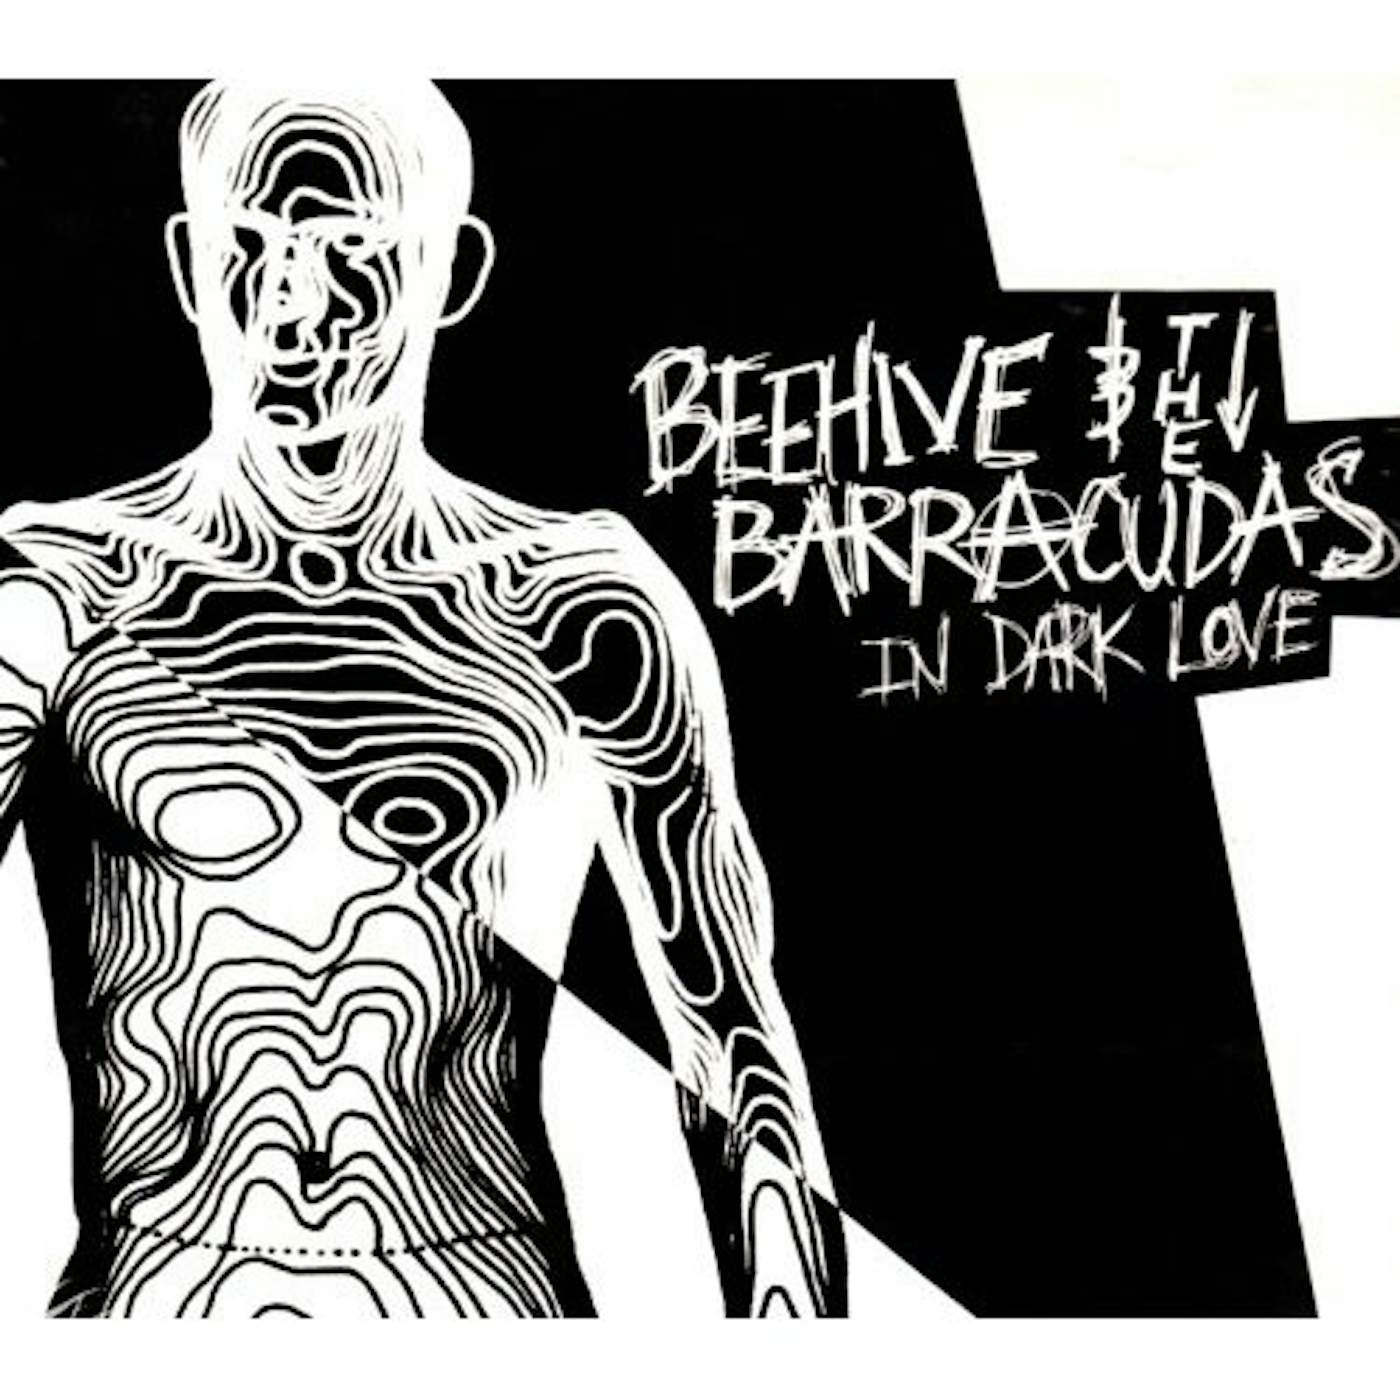 Beehive & Barracudas IN DARK LOVE CD